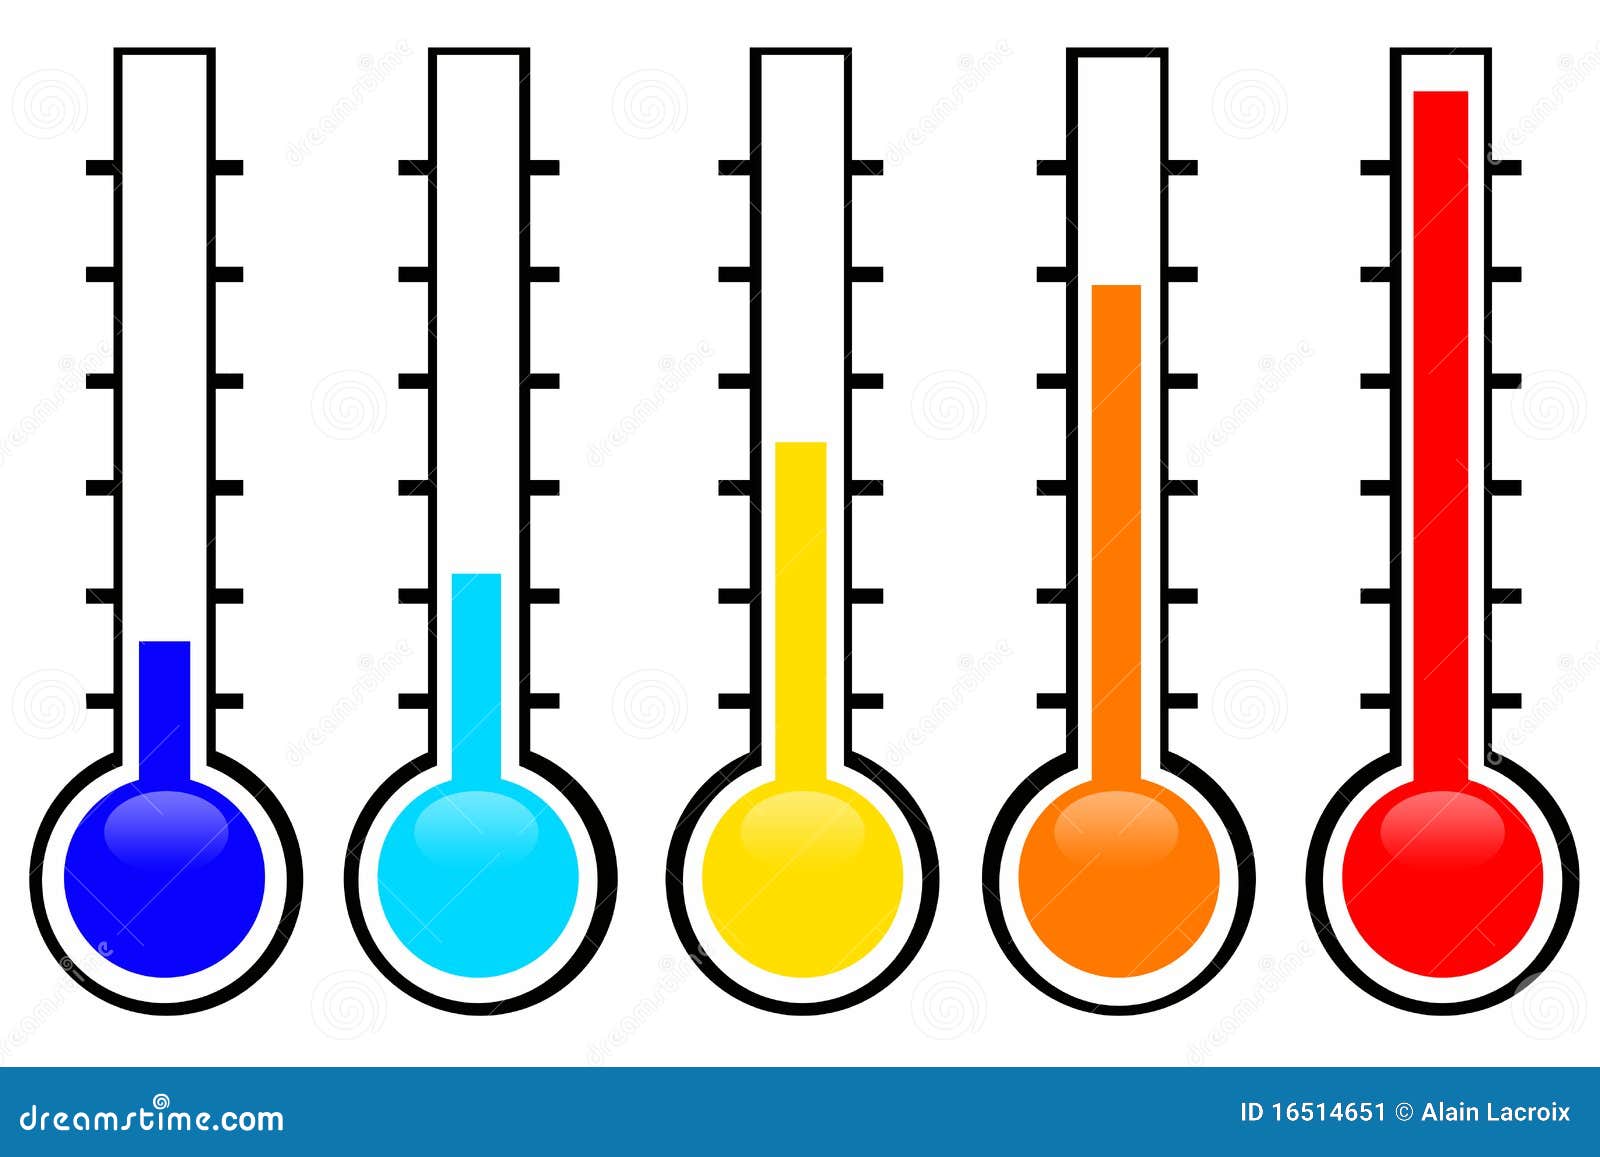 Temperature Stock Image - Image: 16514651